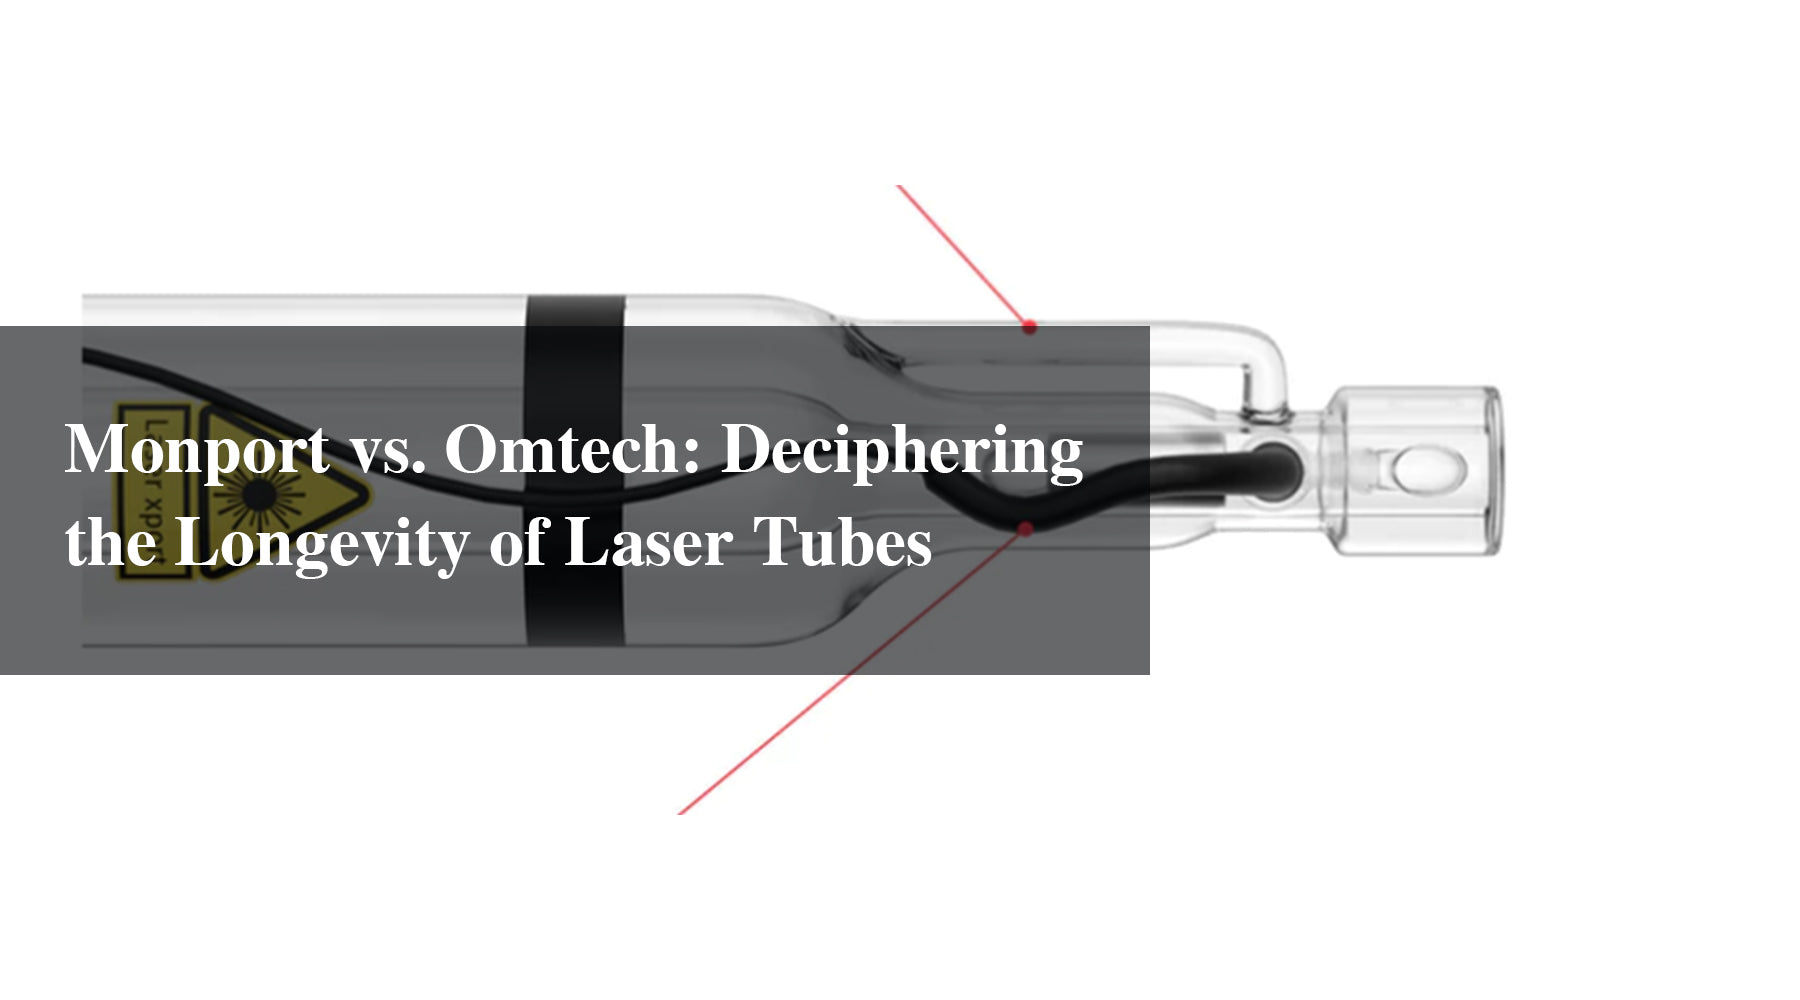 Monport vs. Omtech: Deciphering the Longevity of Laser Tubes